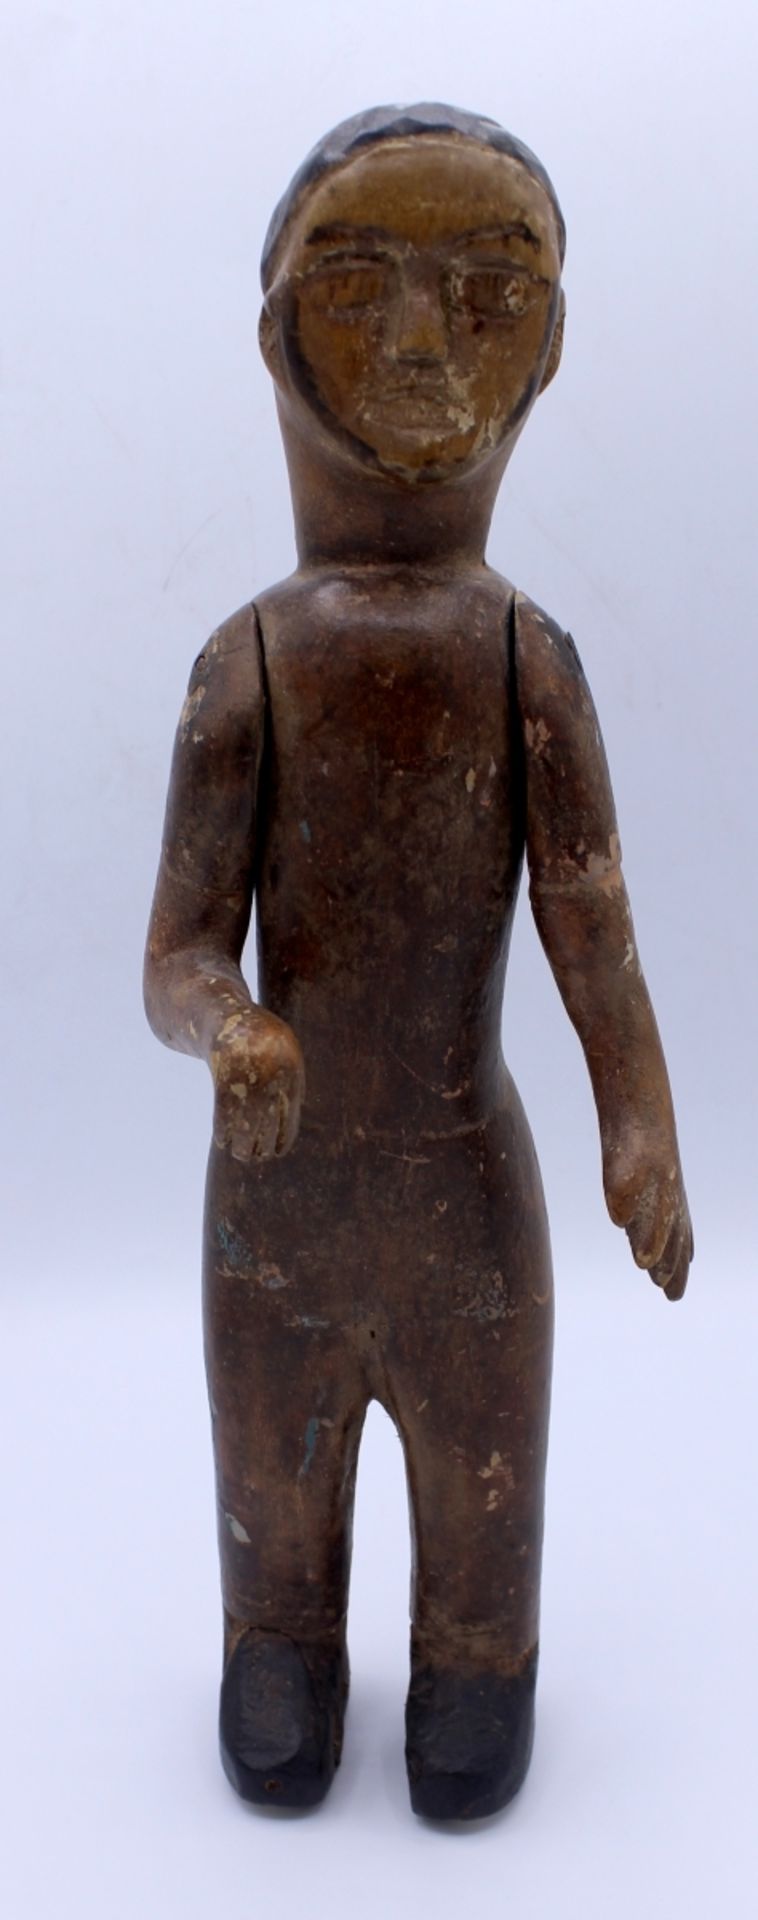 Figur - Ashanti oder Akan - Ghana oder Elfenbeinküste Holz, mit beweglichen Gliedern, grobe